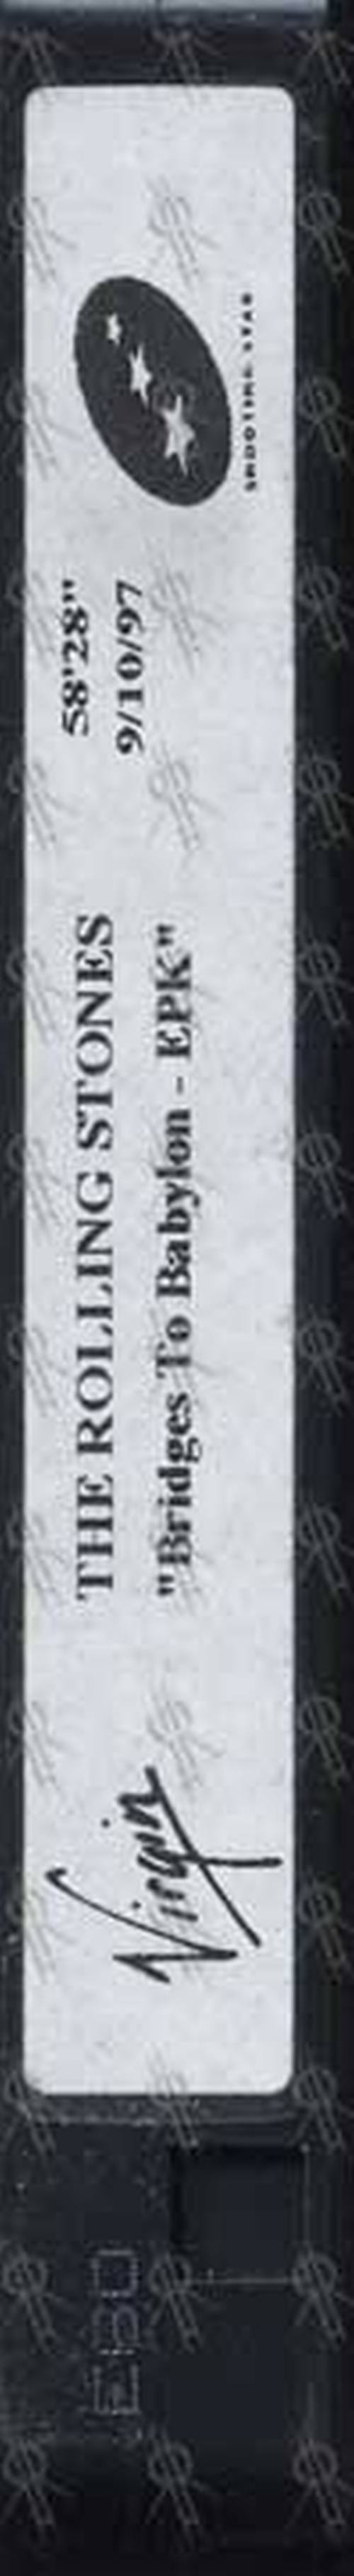 ROLLING STONES - Bridges To Babylon EPK - 1